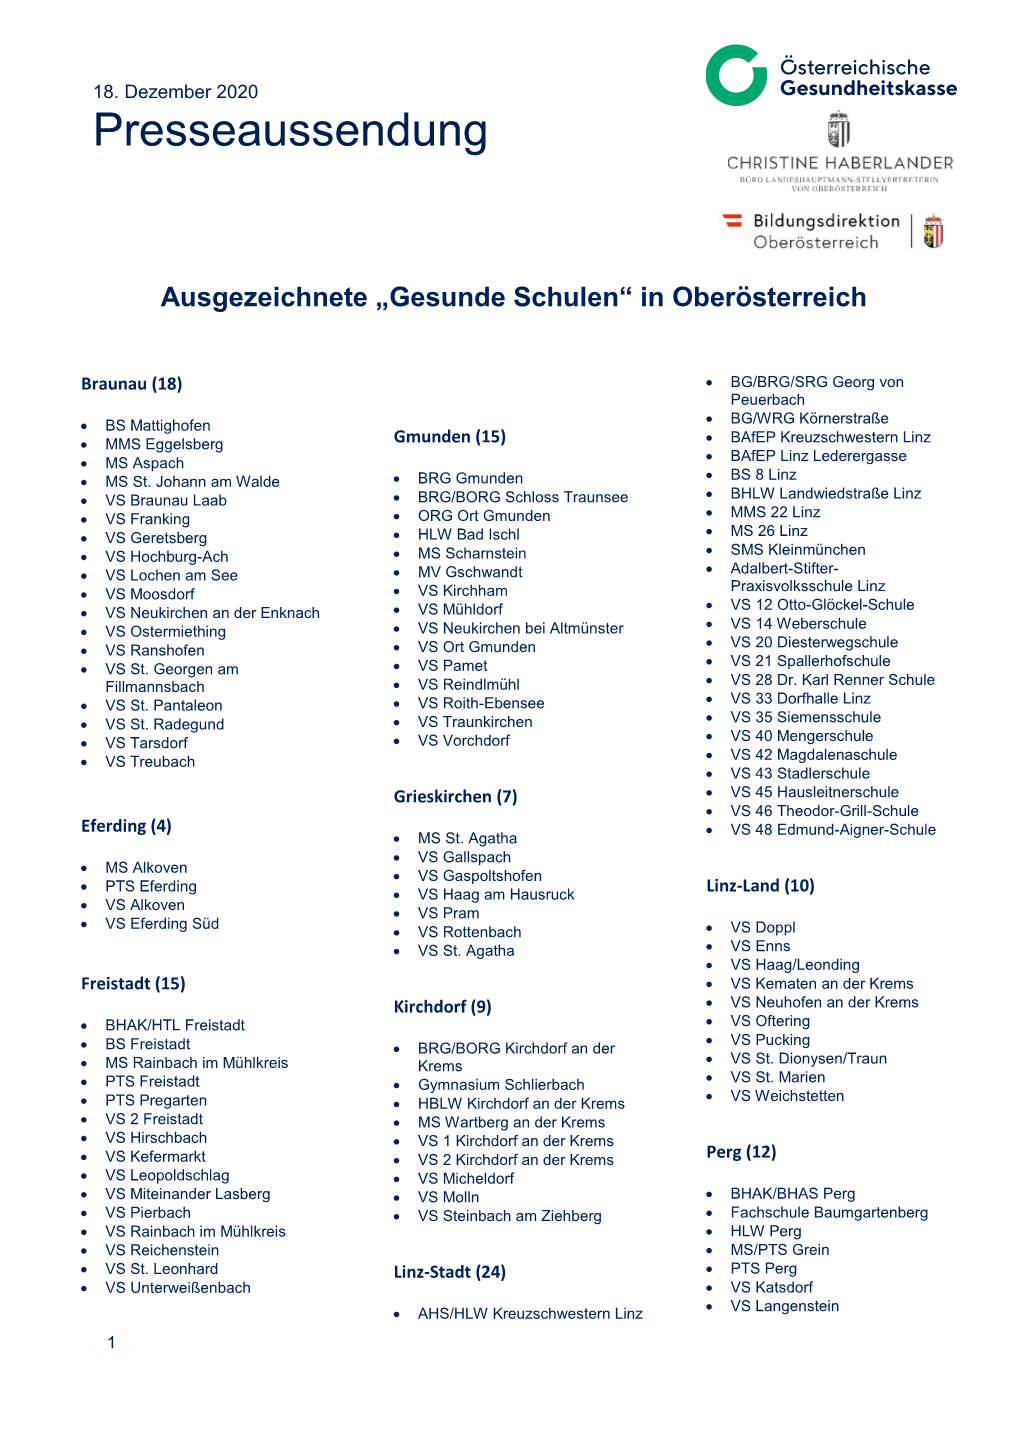 Liste Der Gesunden Schulen in OÖ (541.0